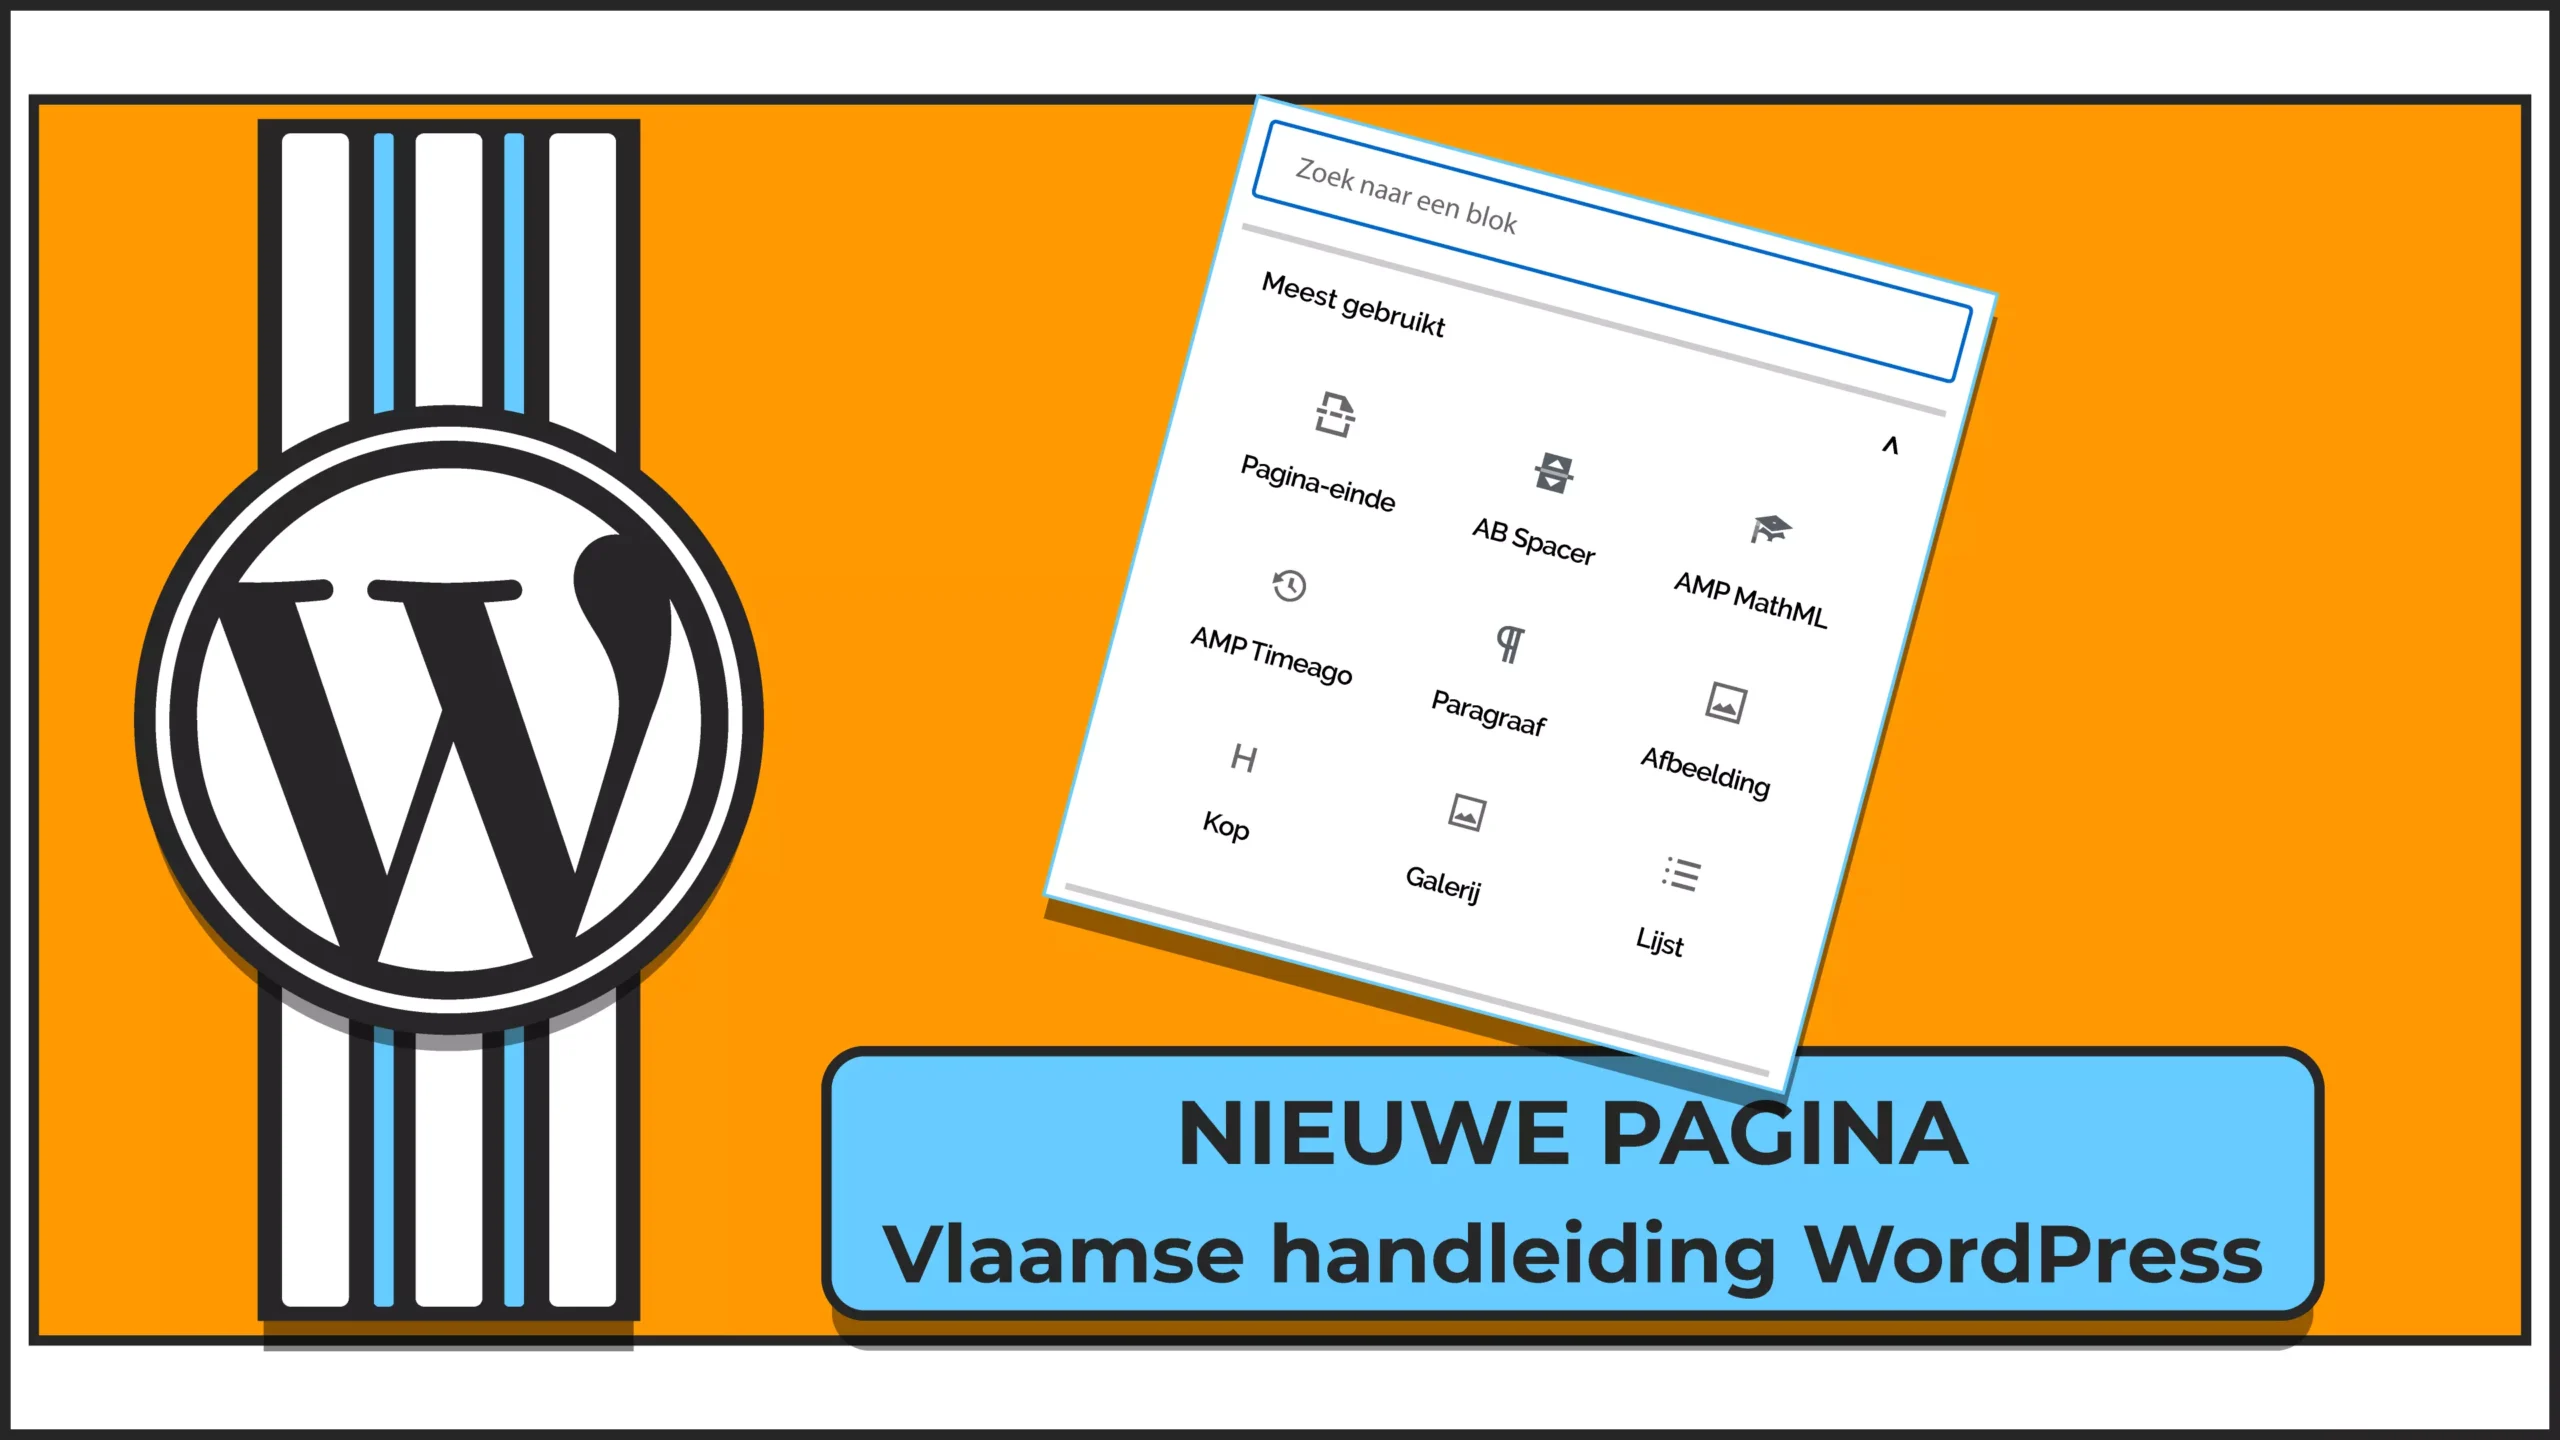 Vlaamse handleiding WordPress met uitleg over hoe je een nieuwe pagina moet maken en publiceren.